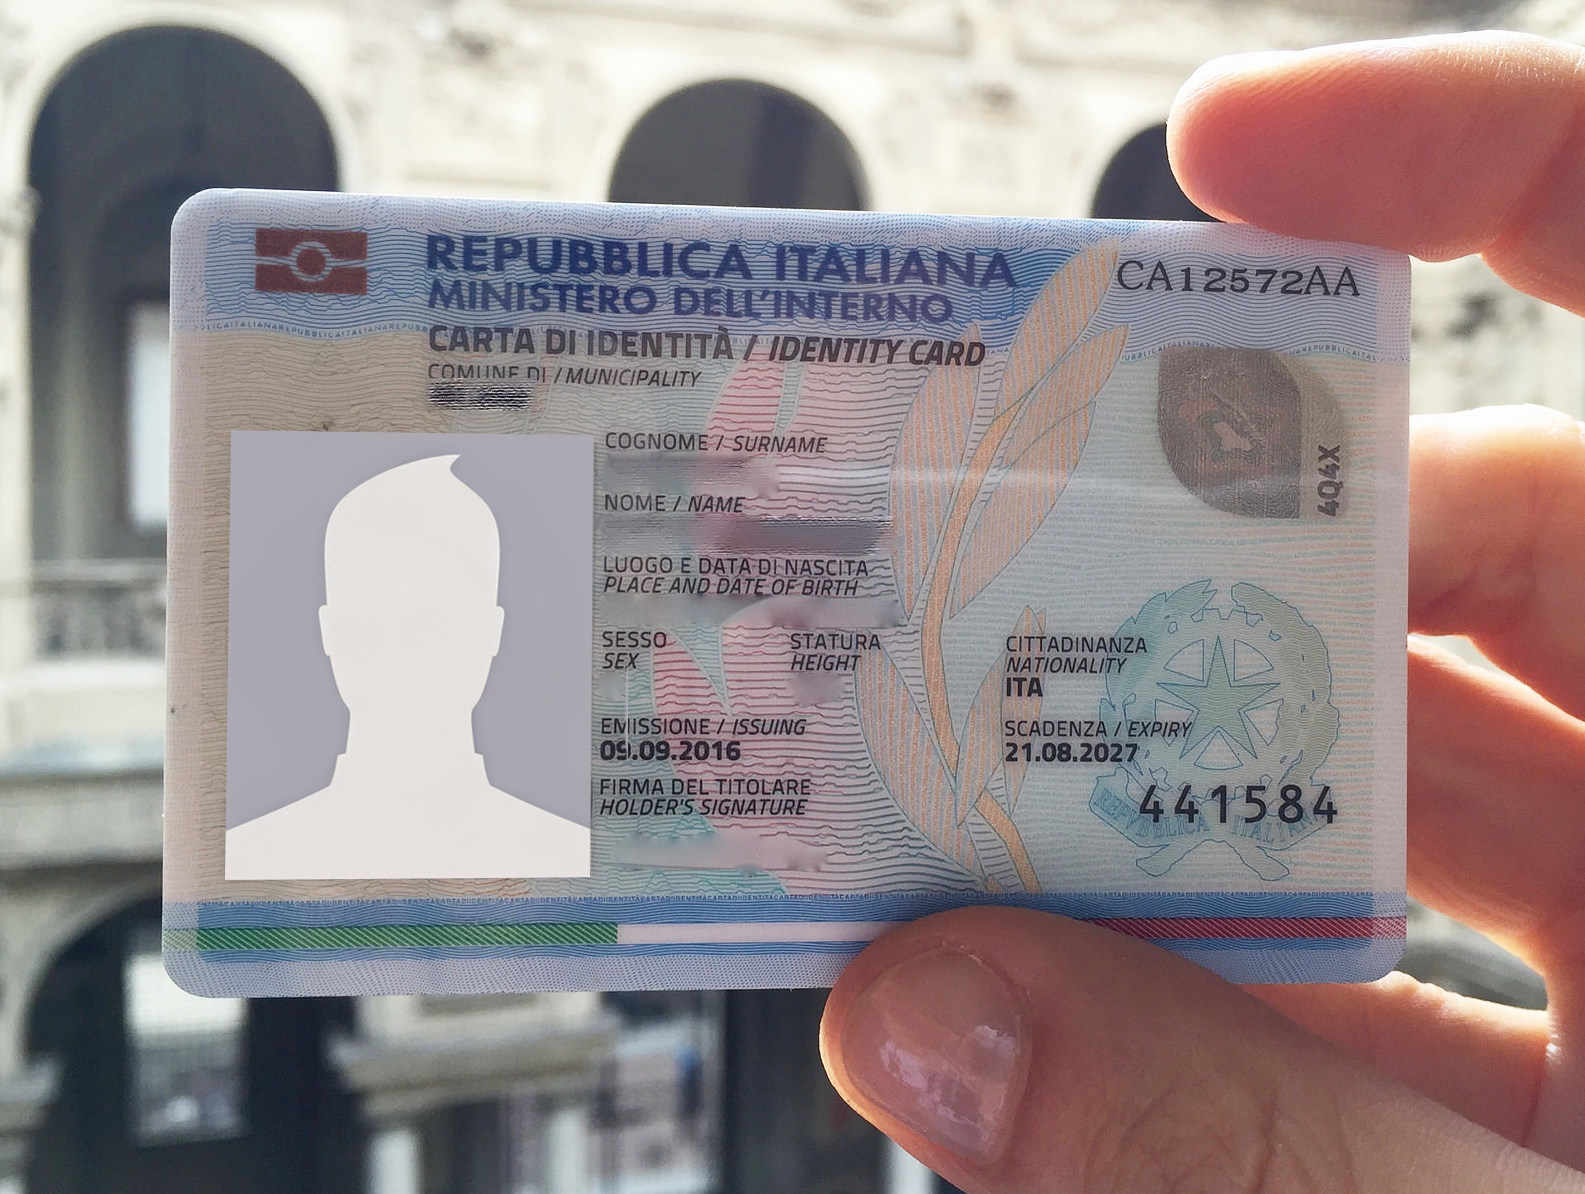 Carta d’identità elettronica: nel week ene un nuovo Open day con prenotazione nei Municipi XI e XII, negli ex Pit, ed in via Petroselli, 52